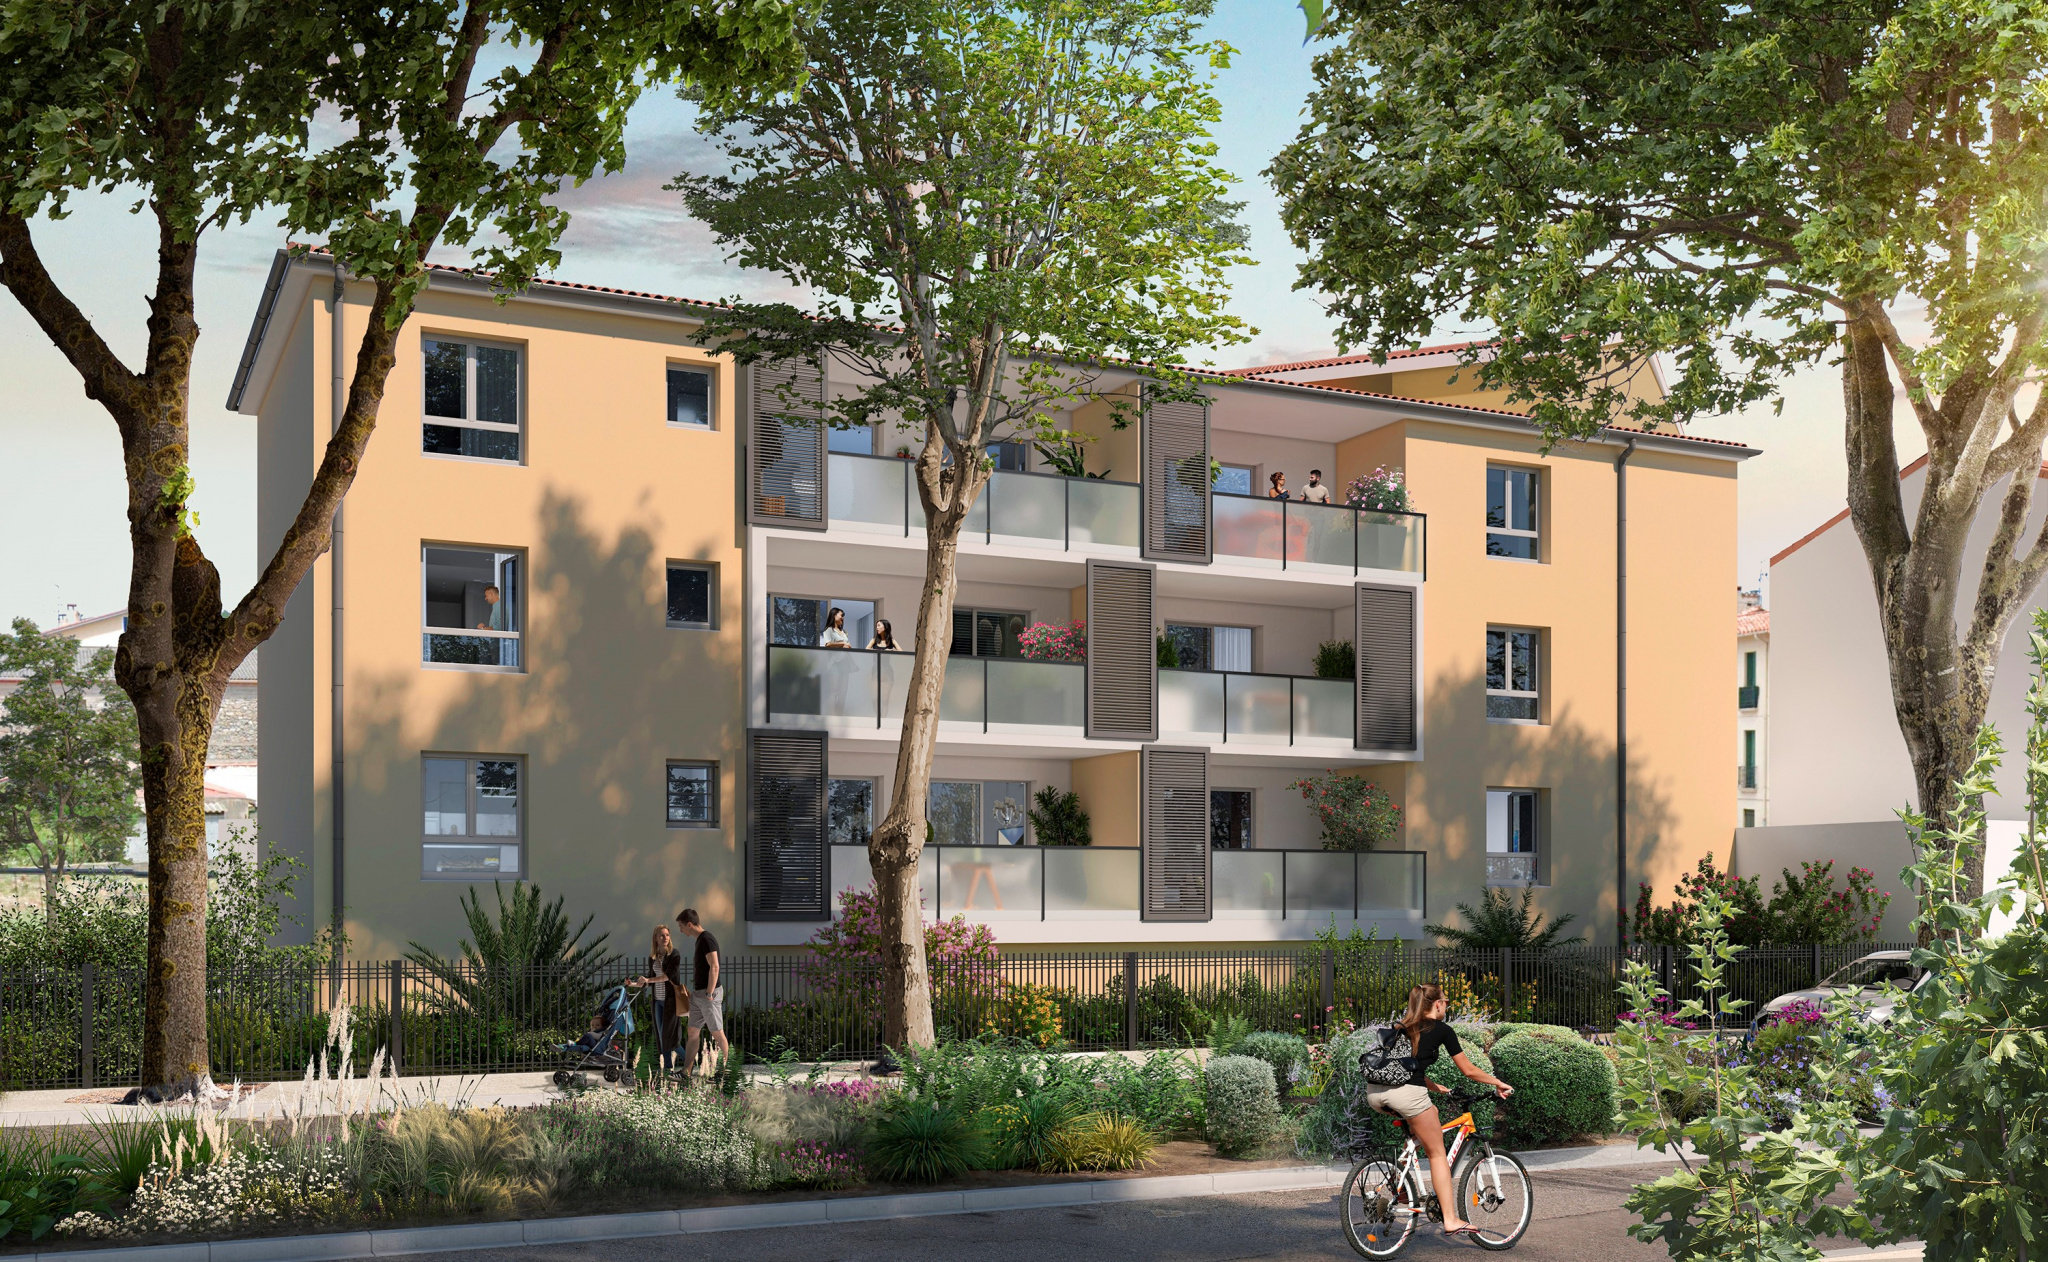 Programme immobilier neuf à Ceret (66) (2 à 4 pièces, 50 à 85 m²) Céret